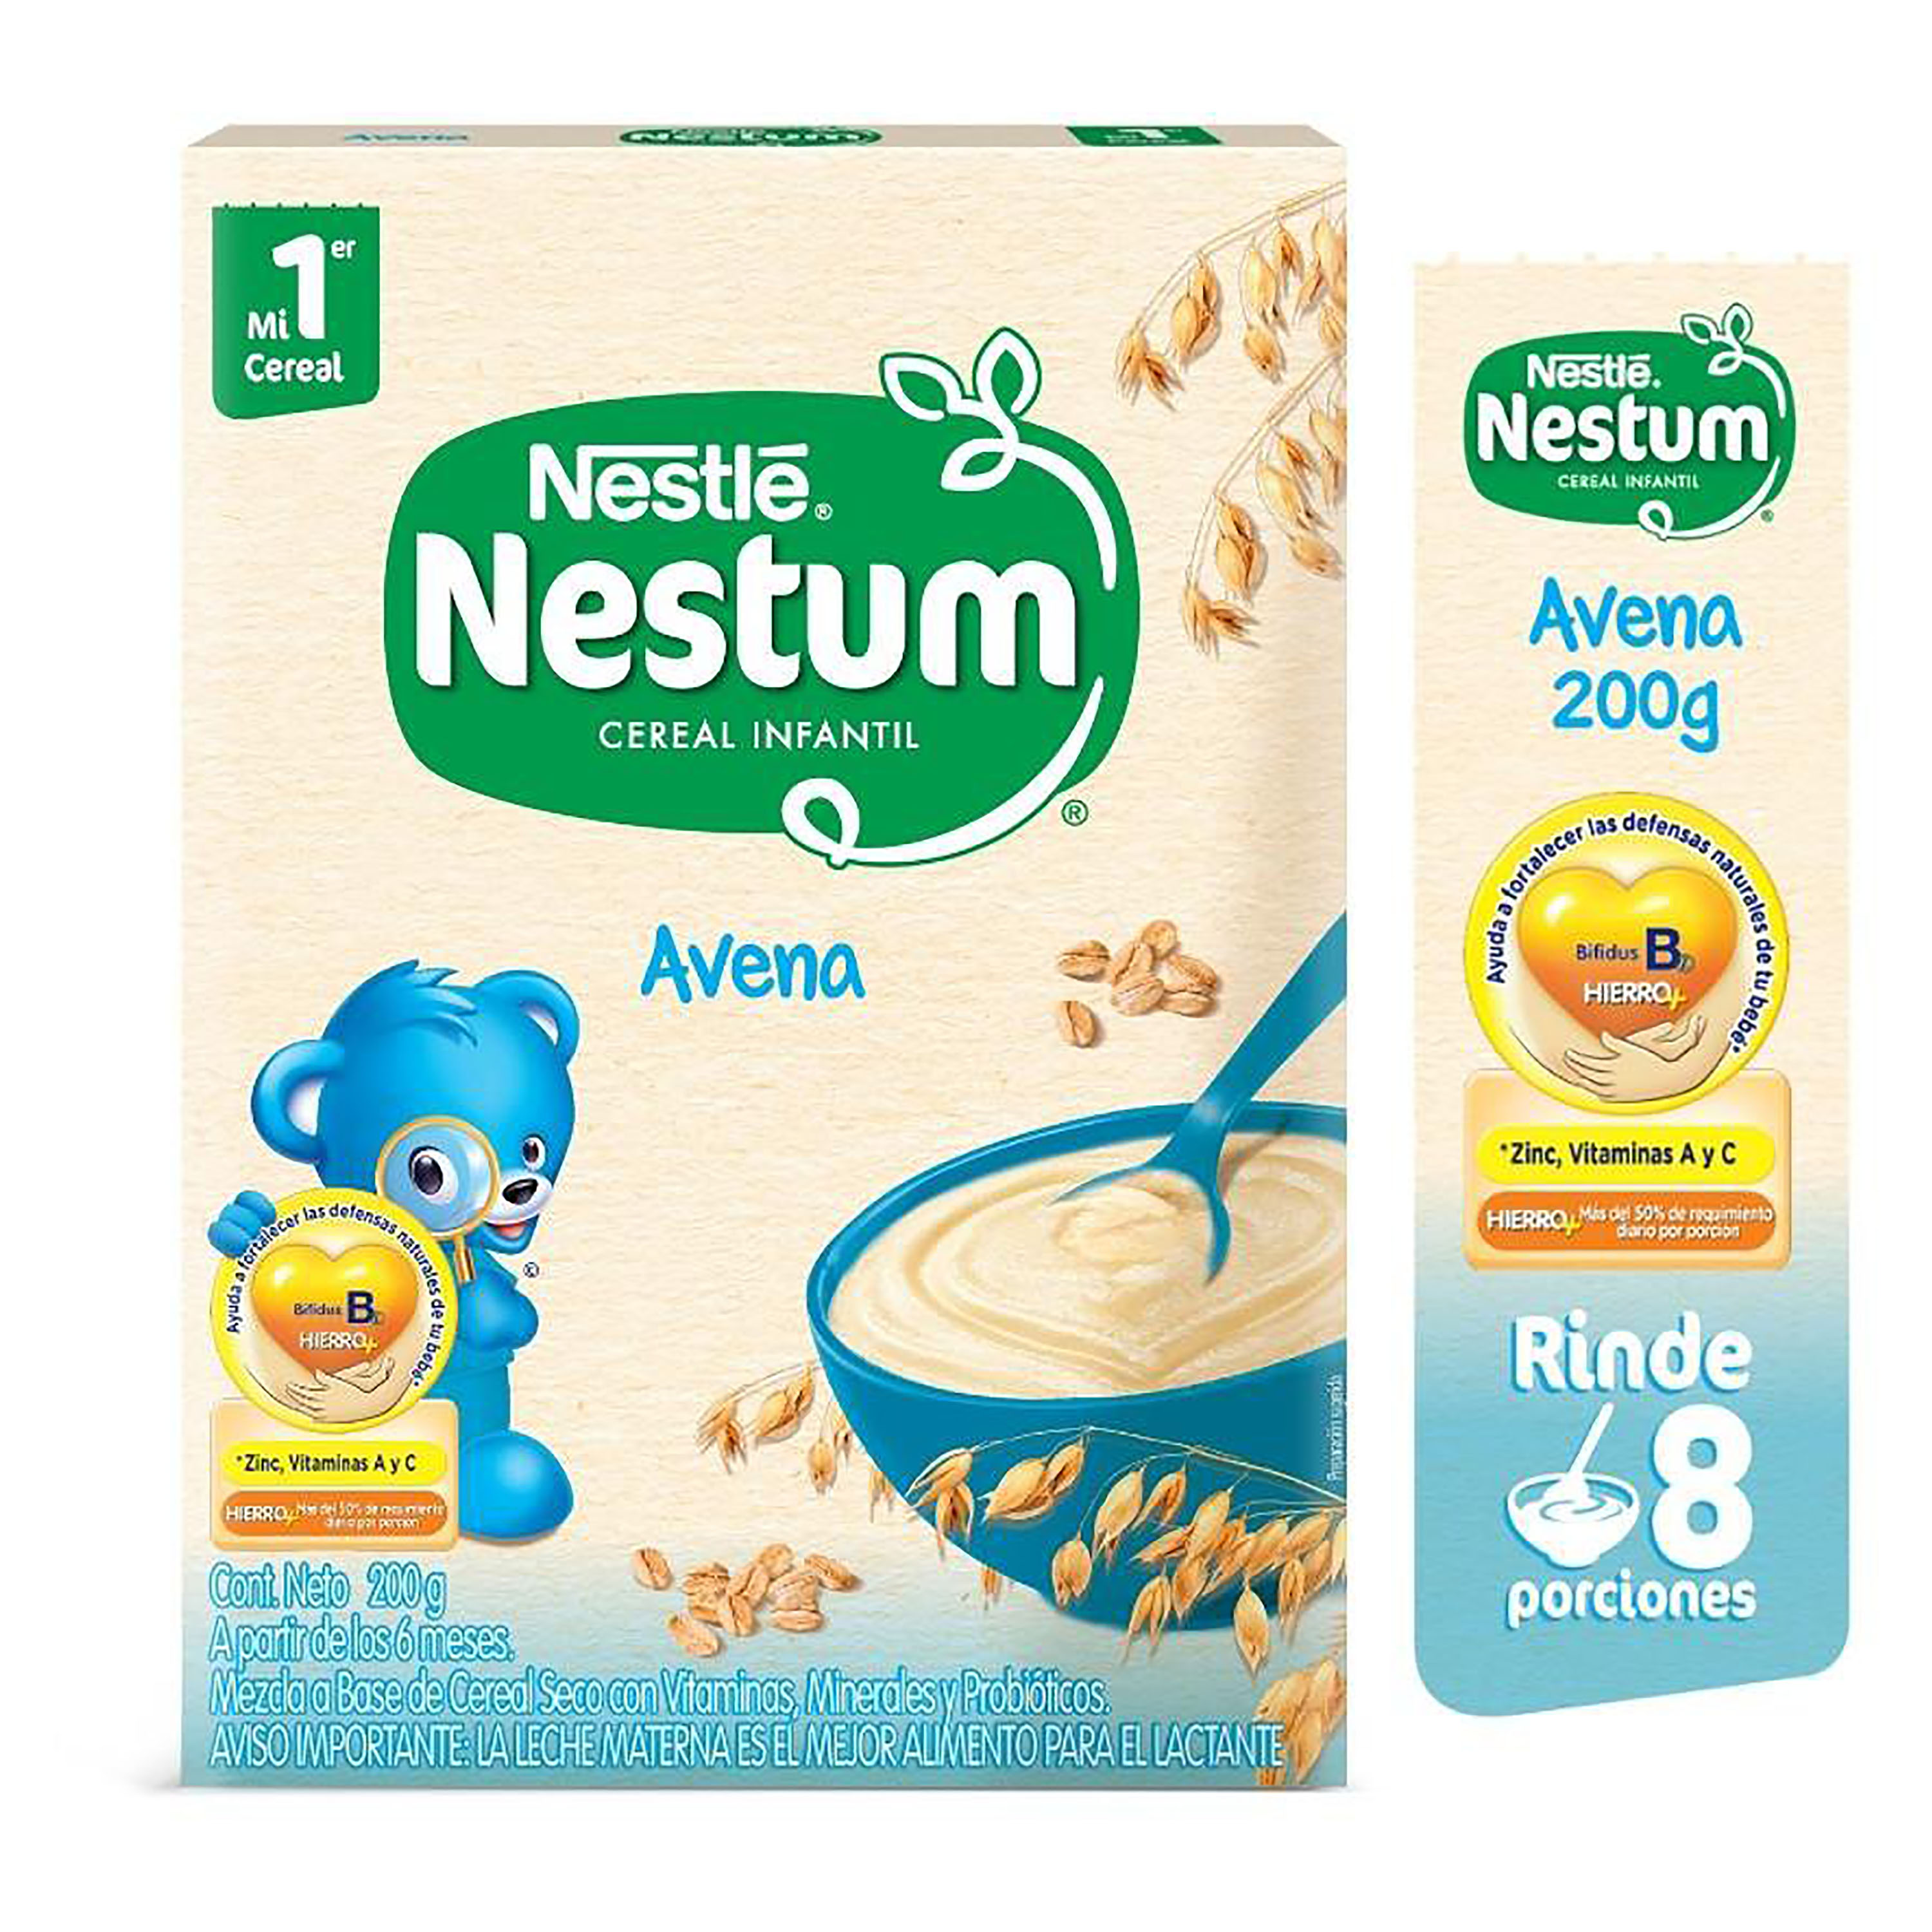 NESTUM-Avena-Cereal-Infantil-Caja-200g-1-10181